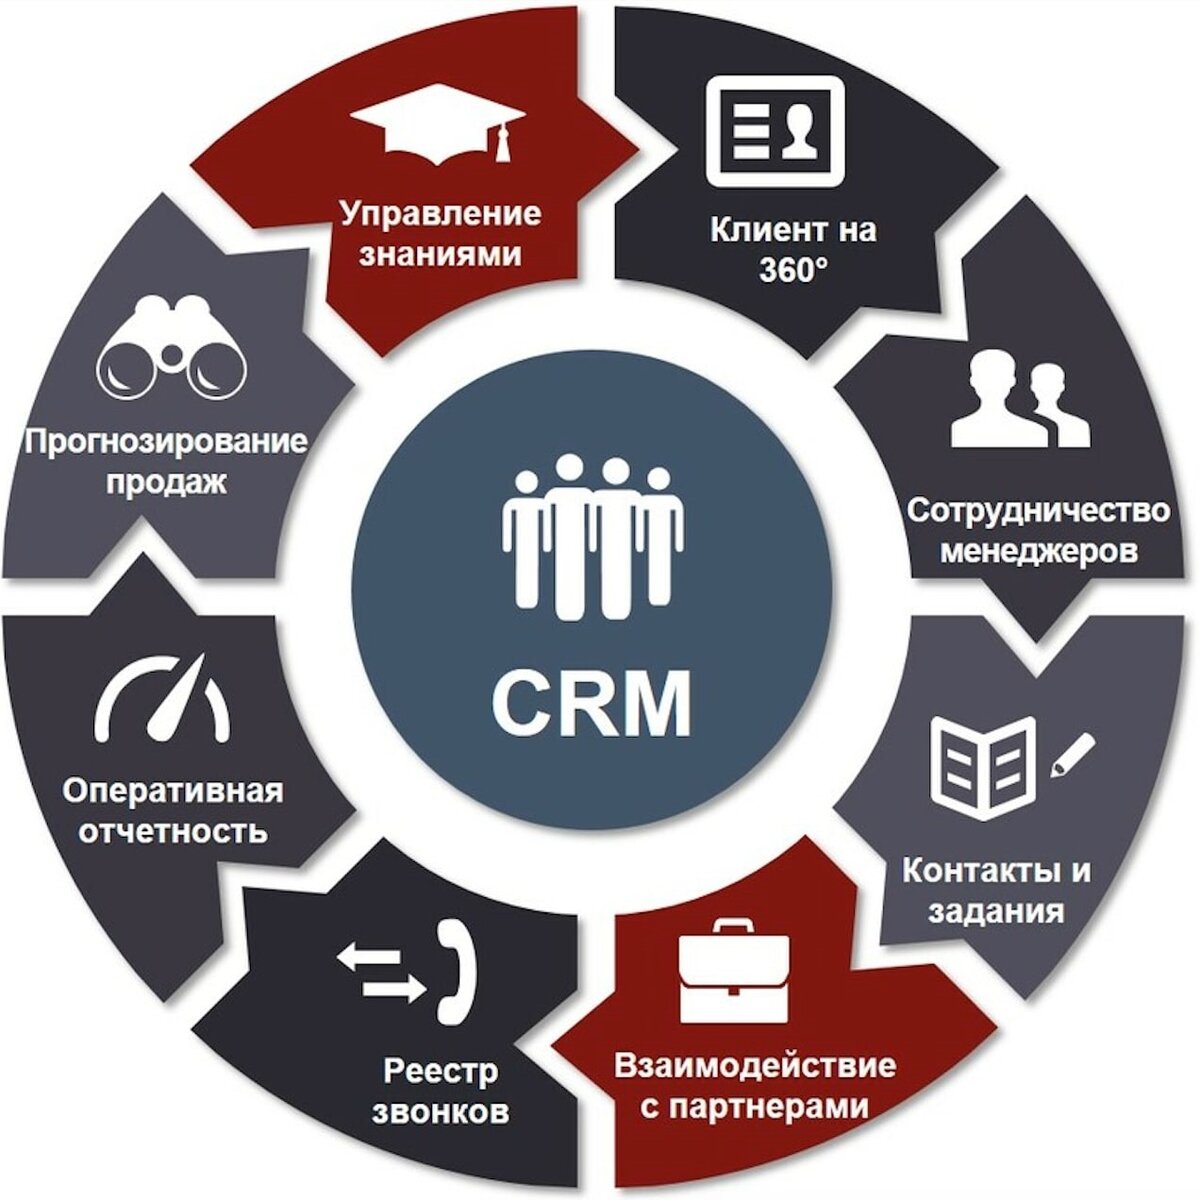 Можно выбрать оптимальный для. CRM системы управления взаимоотношениями с клиентами. GRM - система управления ЗВАИМООТНОШЕНИЯ С клиентами. CRM (customer relationship Management) системы. CRM системы что это.